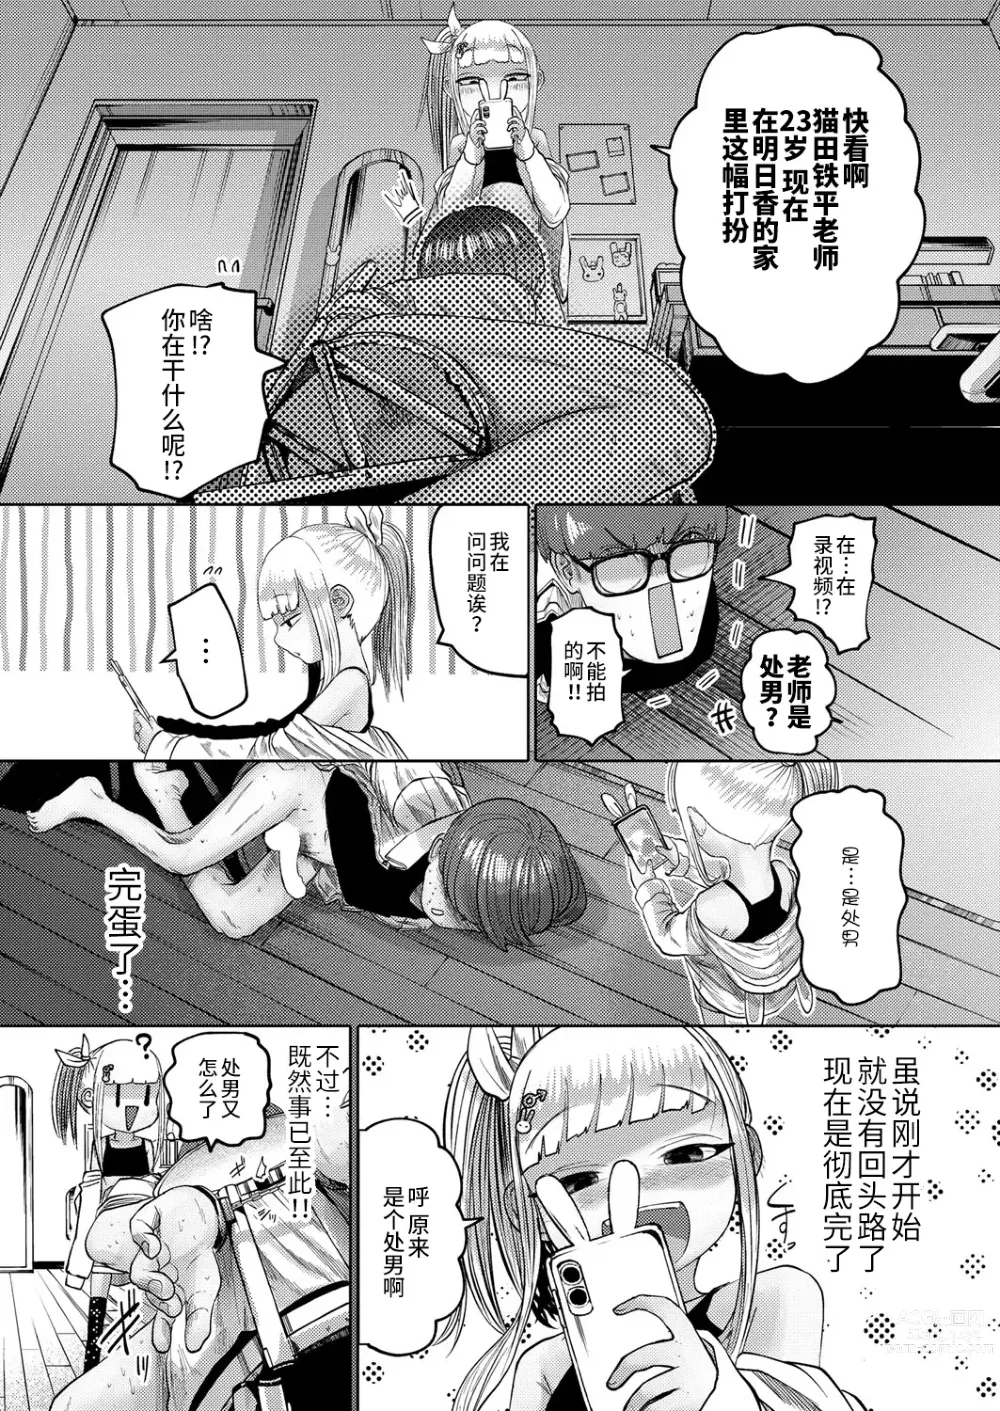 Page 12 of manga ねーうしとらうー! #1-5